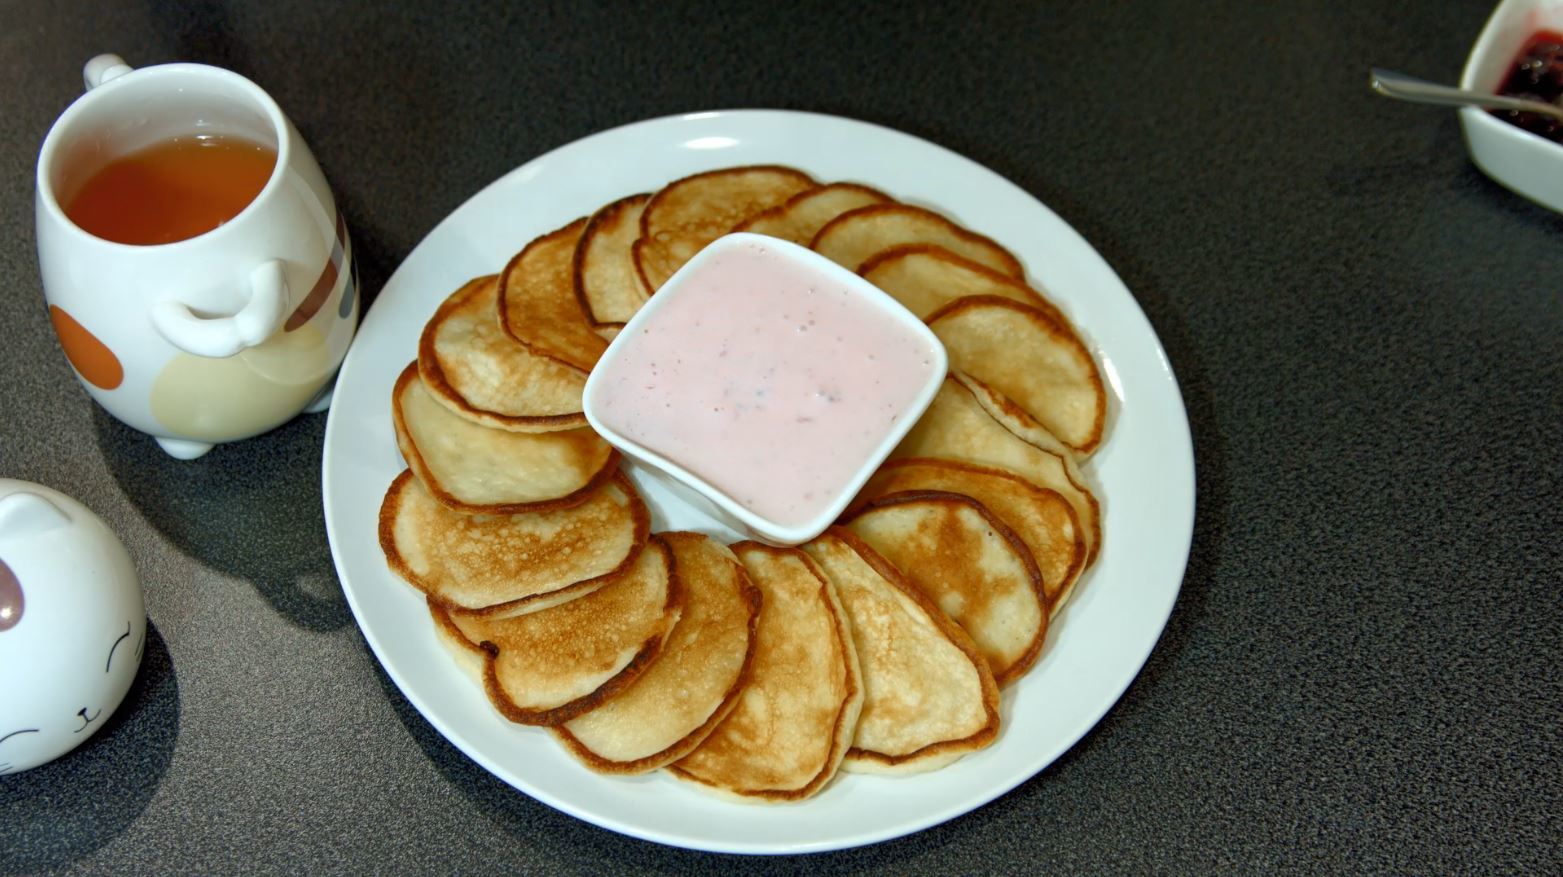 Pancakes on kefir - My, Recipe, Pancakes, Kefir, , Cooking